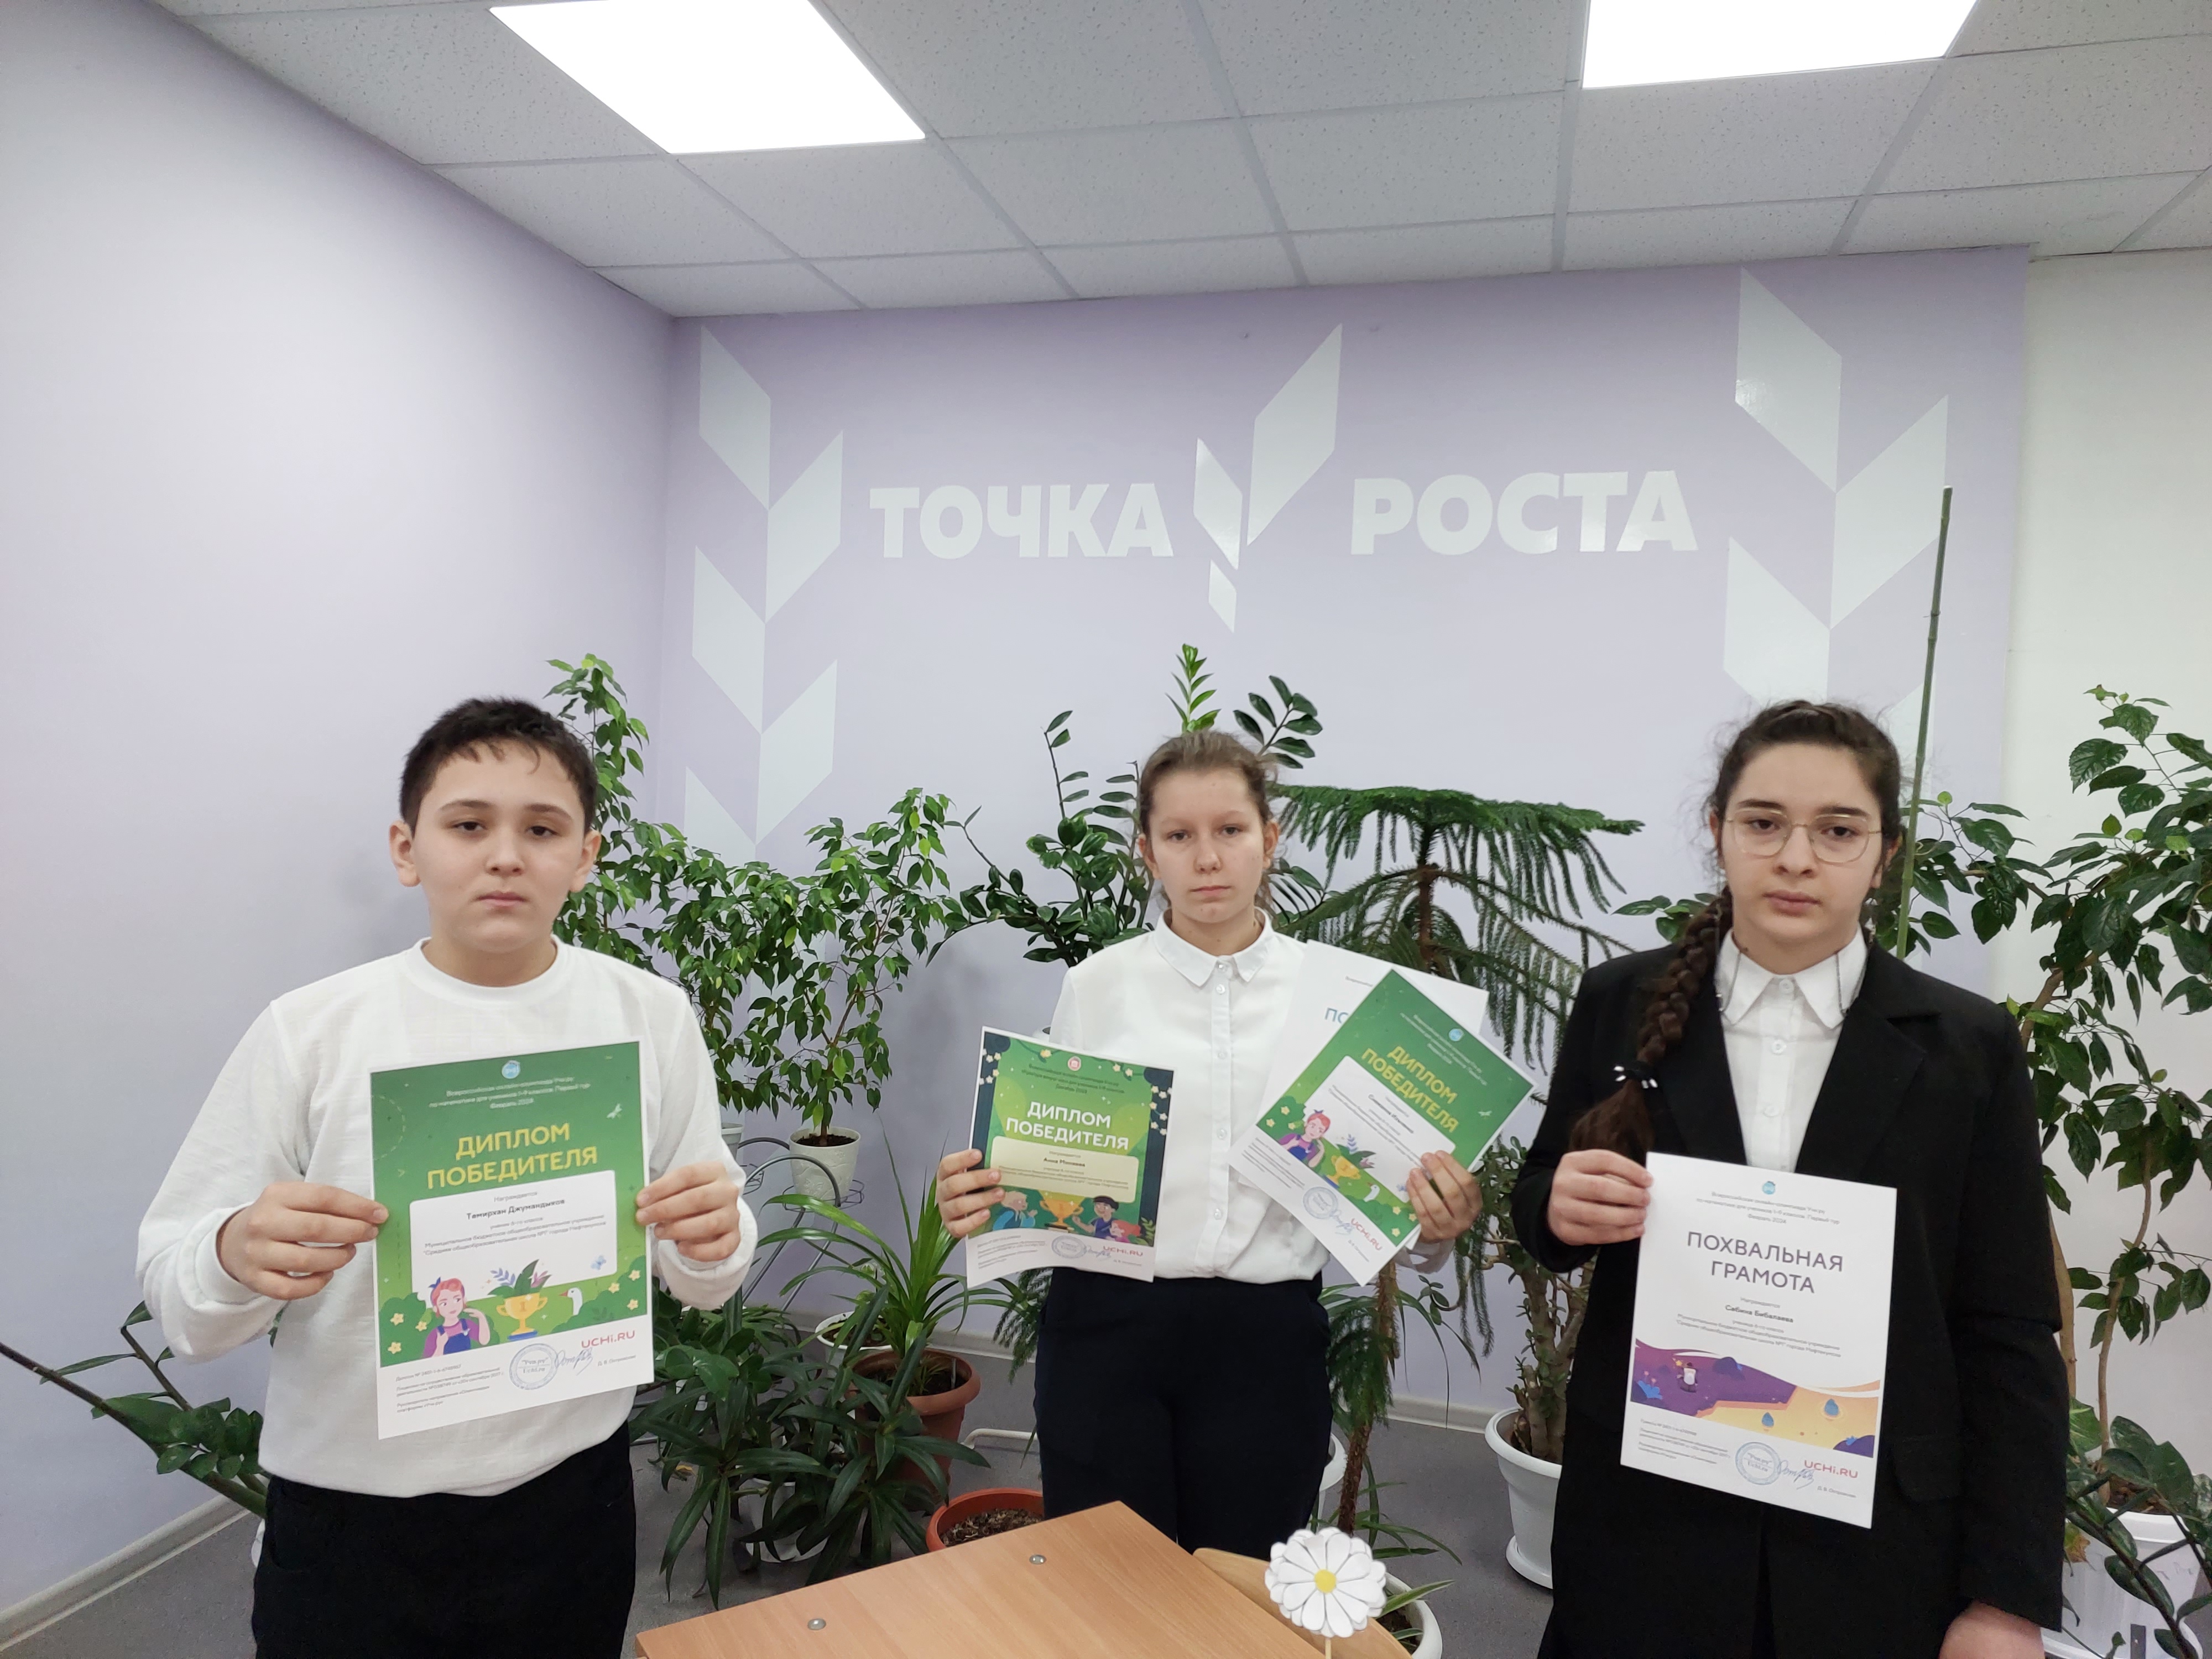 Всероссийская онлайн-олимпиада Учи.ру по математике для учеников 1-9 классов.